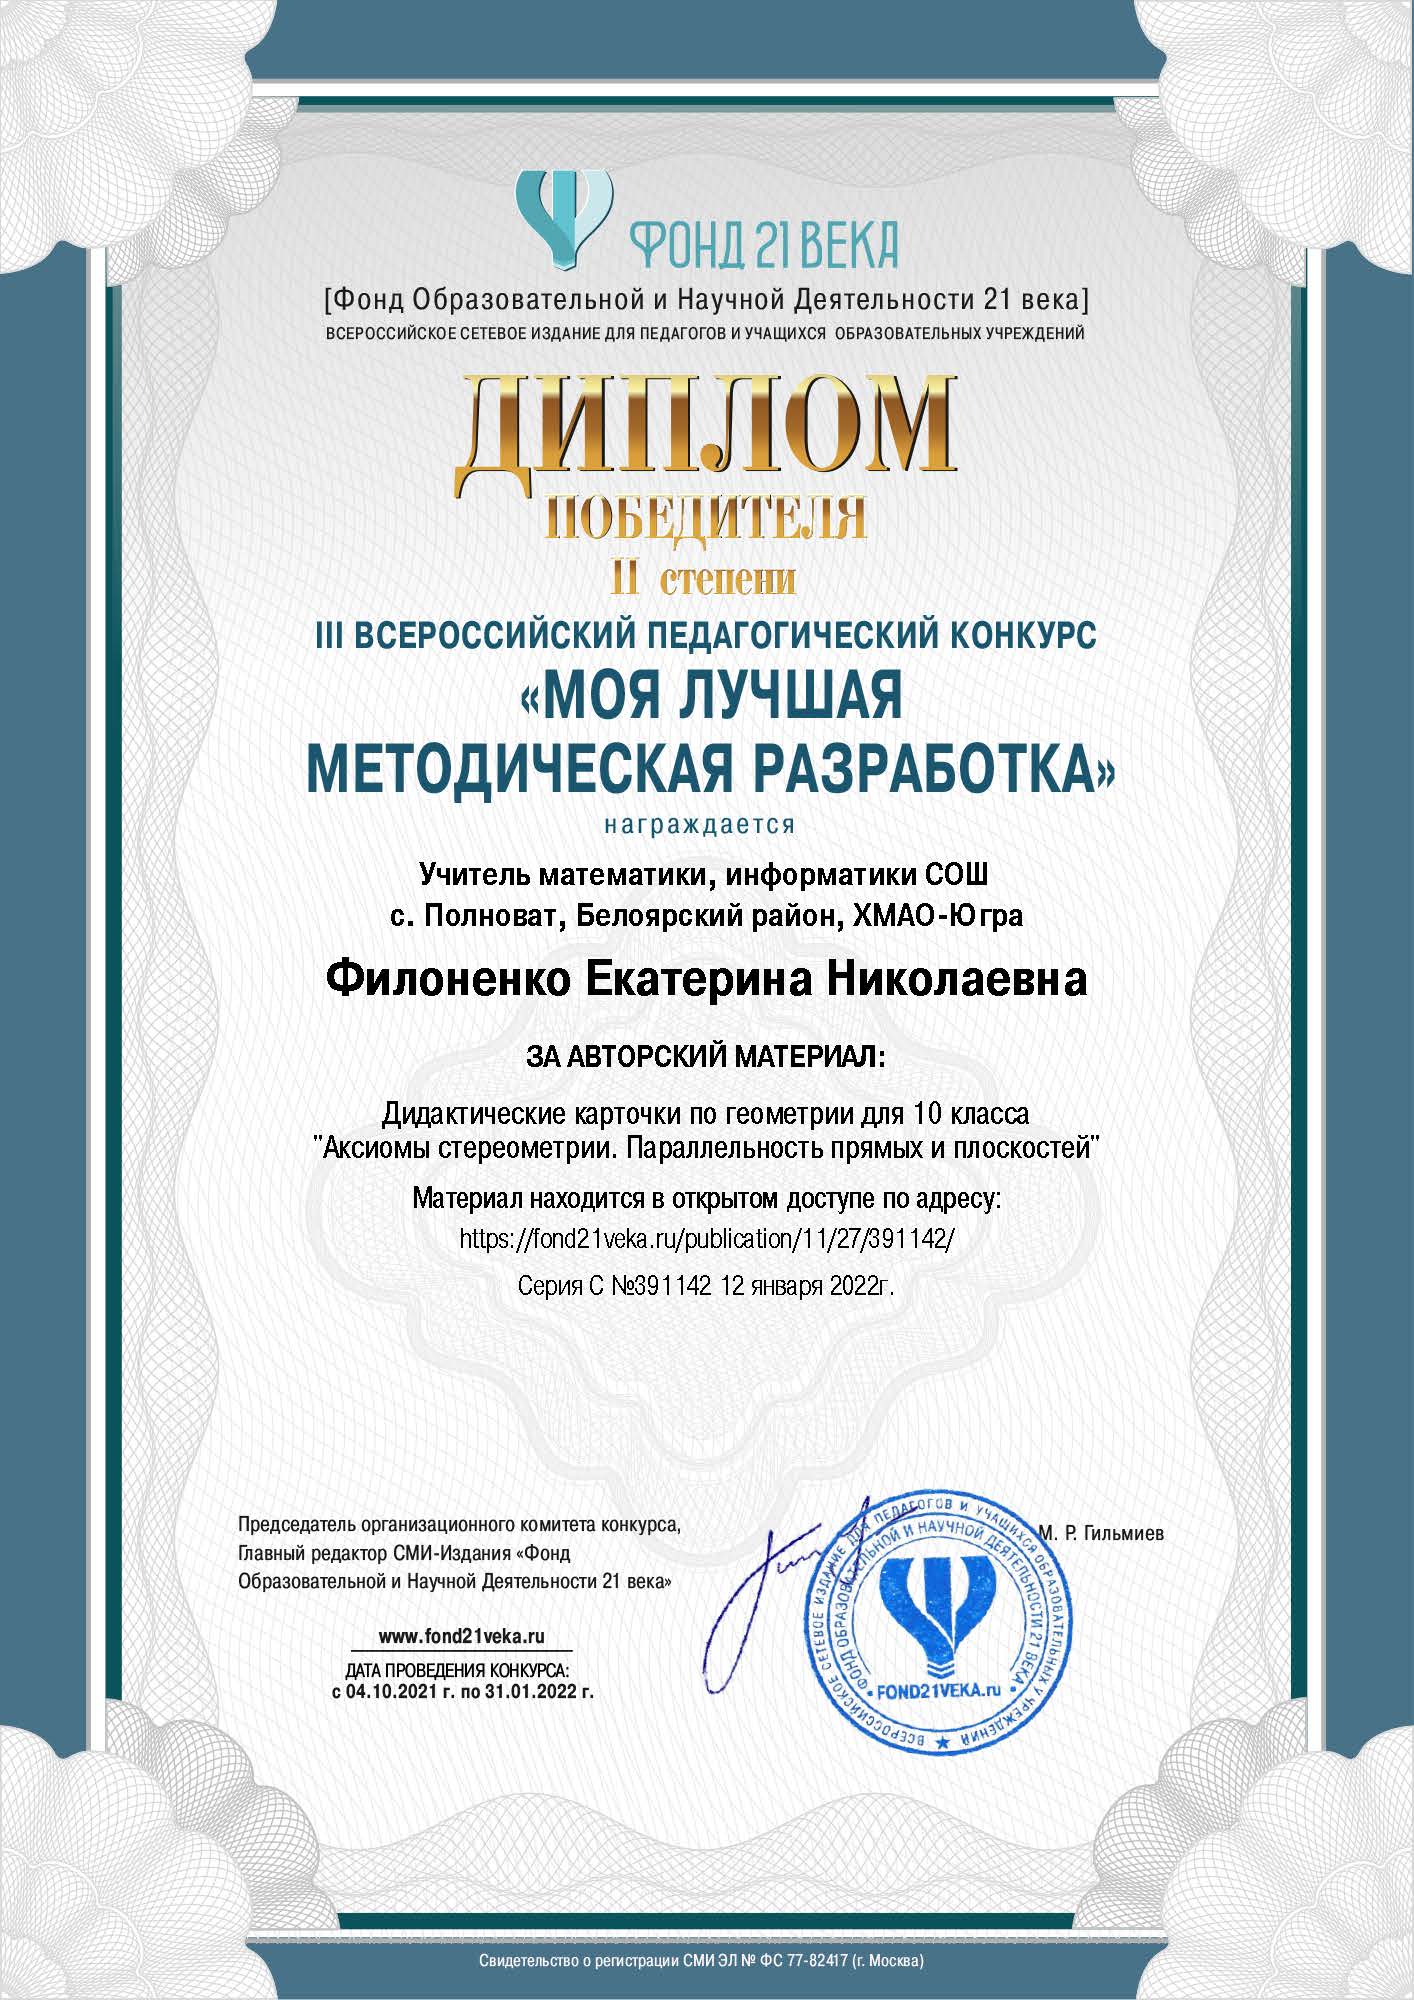 Диплом победителя всероссийского педагогического конкурса «Моя лучшая методическая разработка», 2022